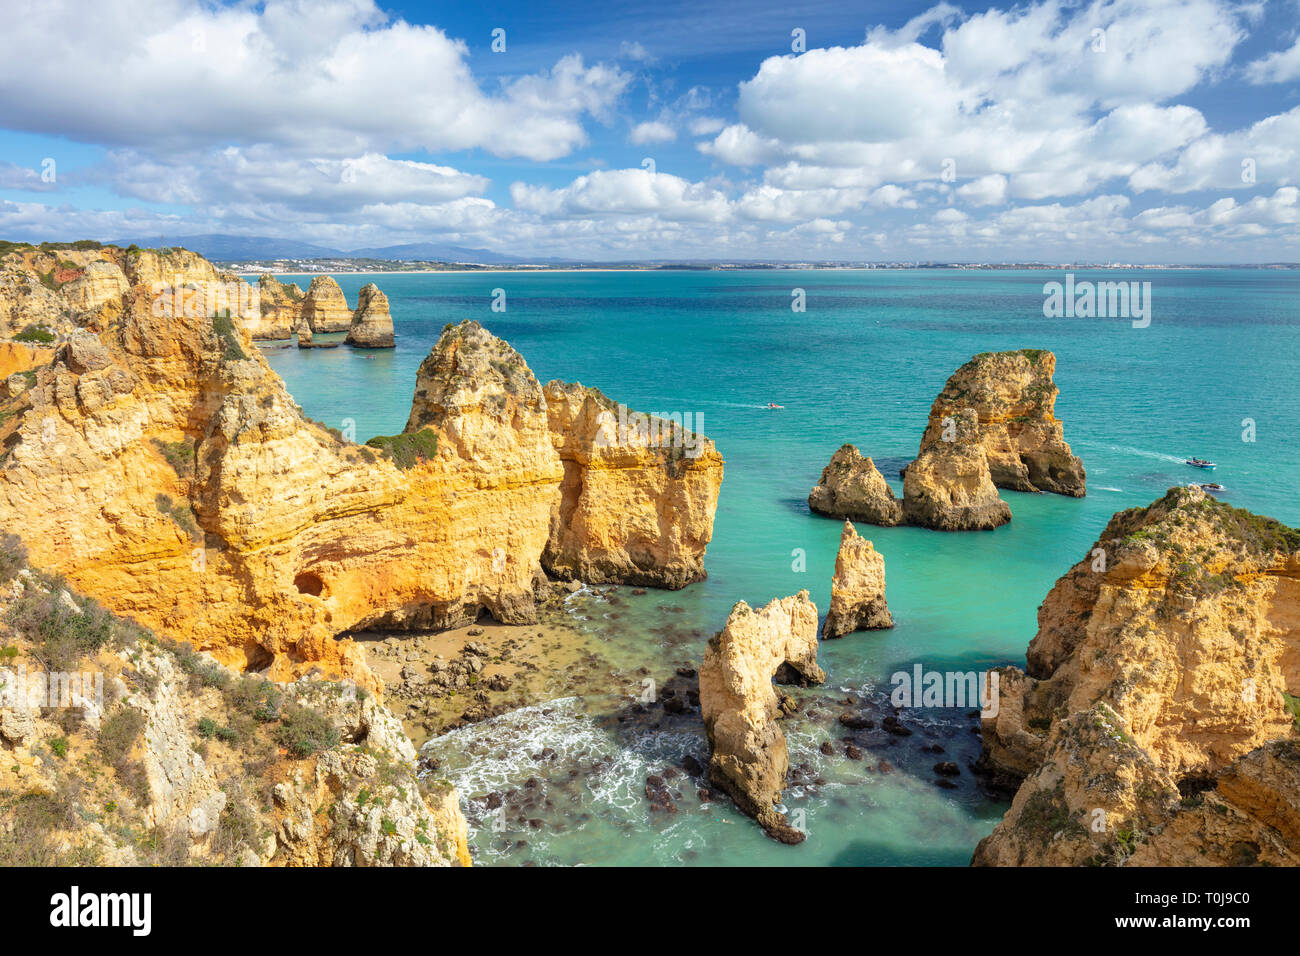 Côte de l'Algarve Portugal Ponta da Piedade formations rocheuses côtières avec des cavernes et grottes visitées en bateau au départ de Lagos Algarve Portugal Europe de l'UE Banque D'Images